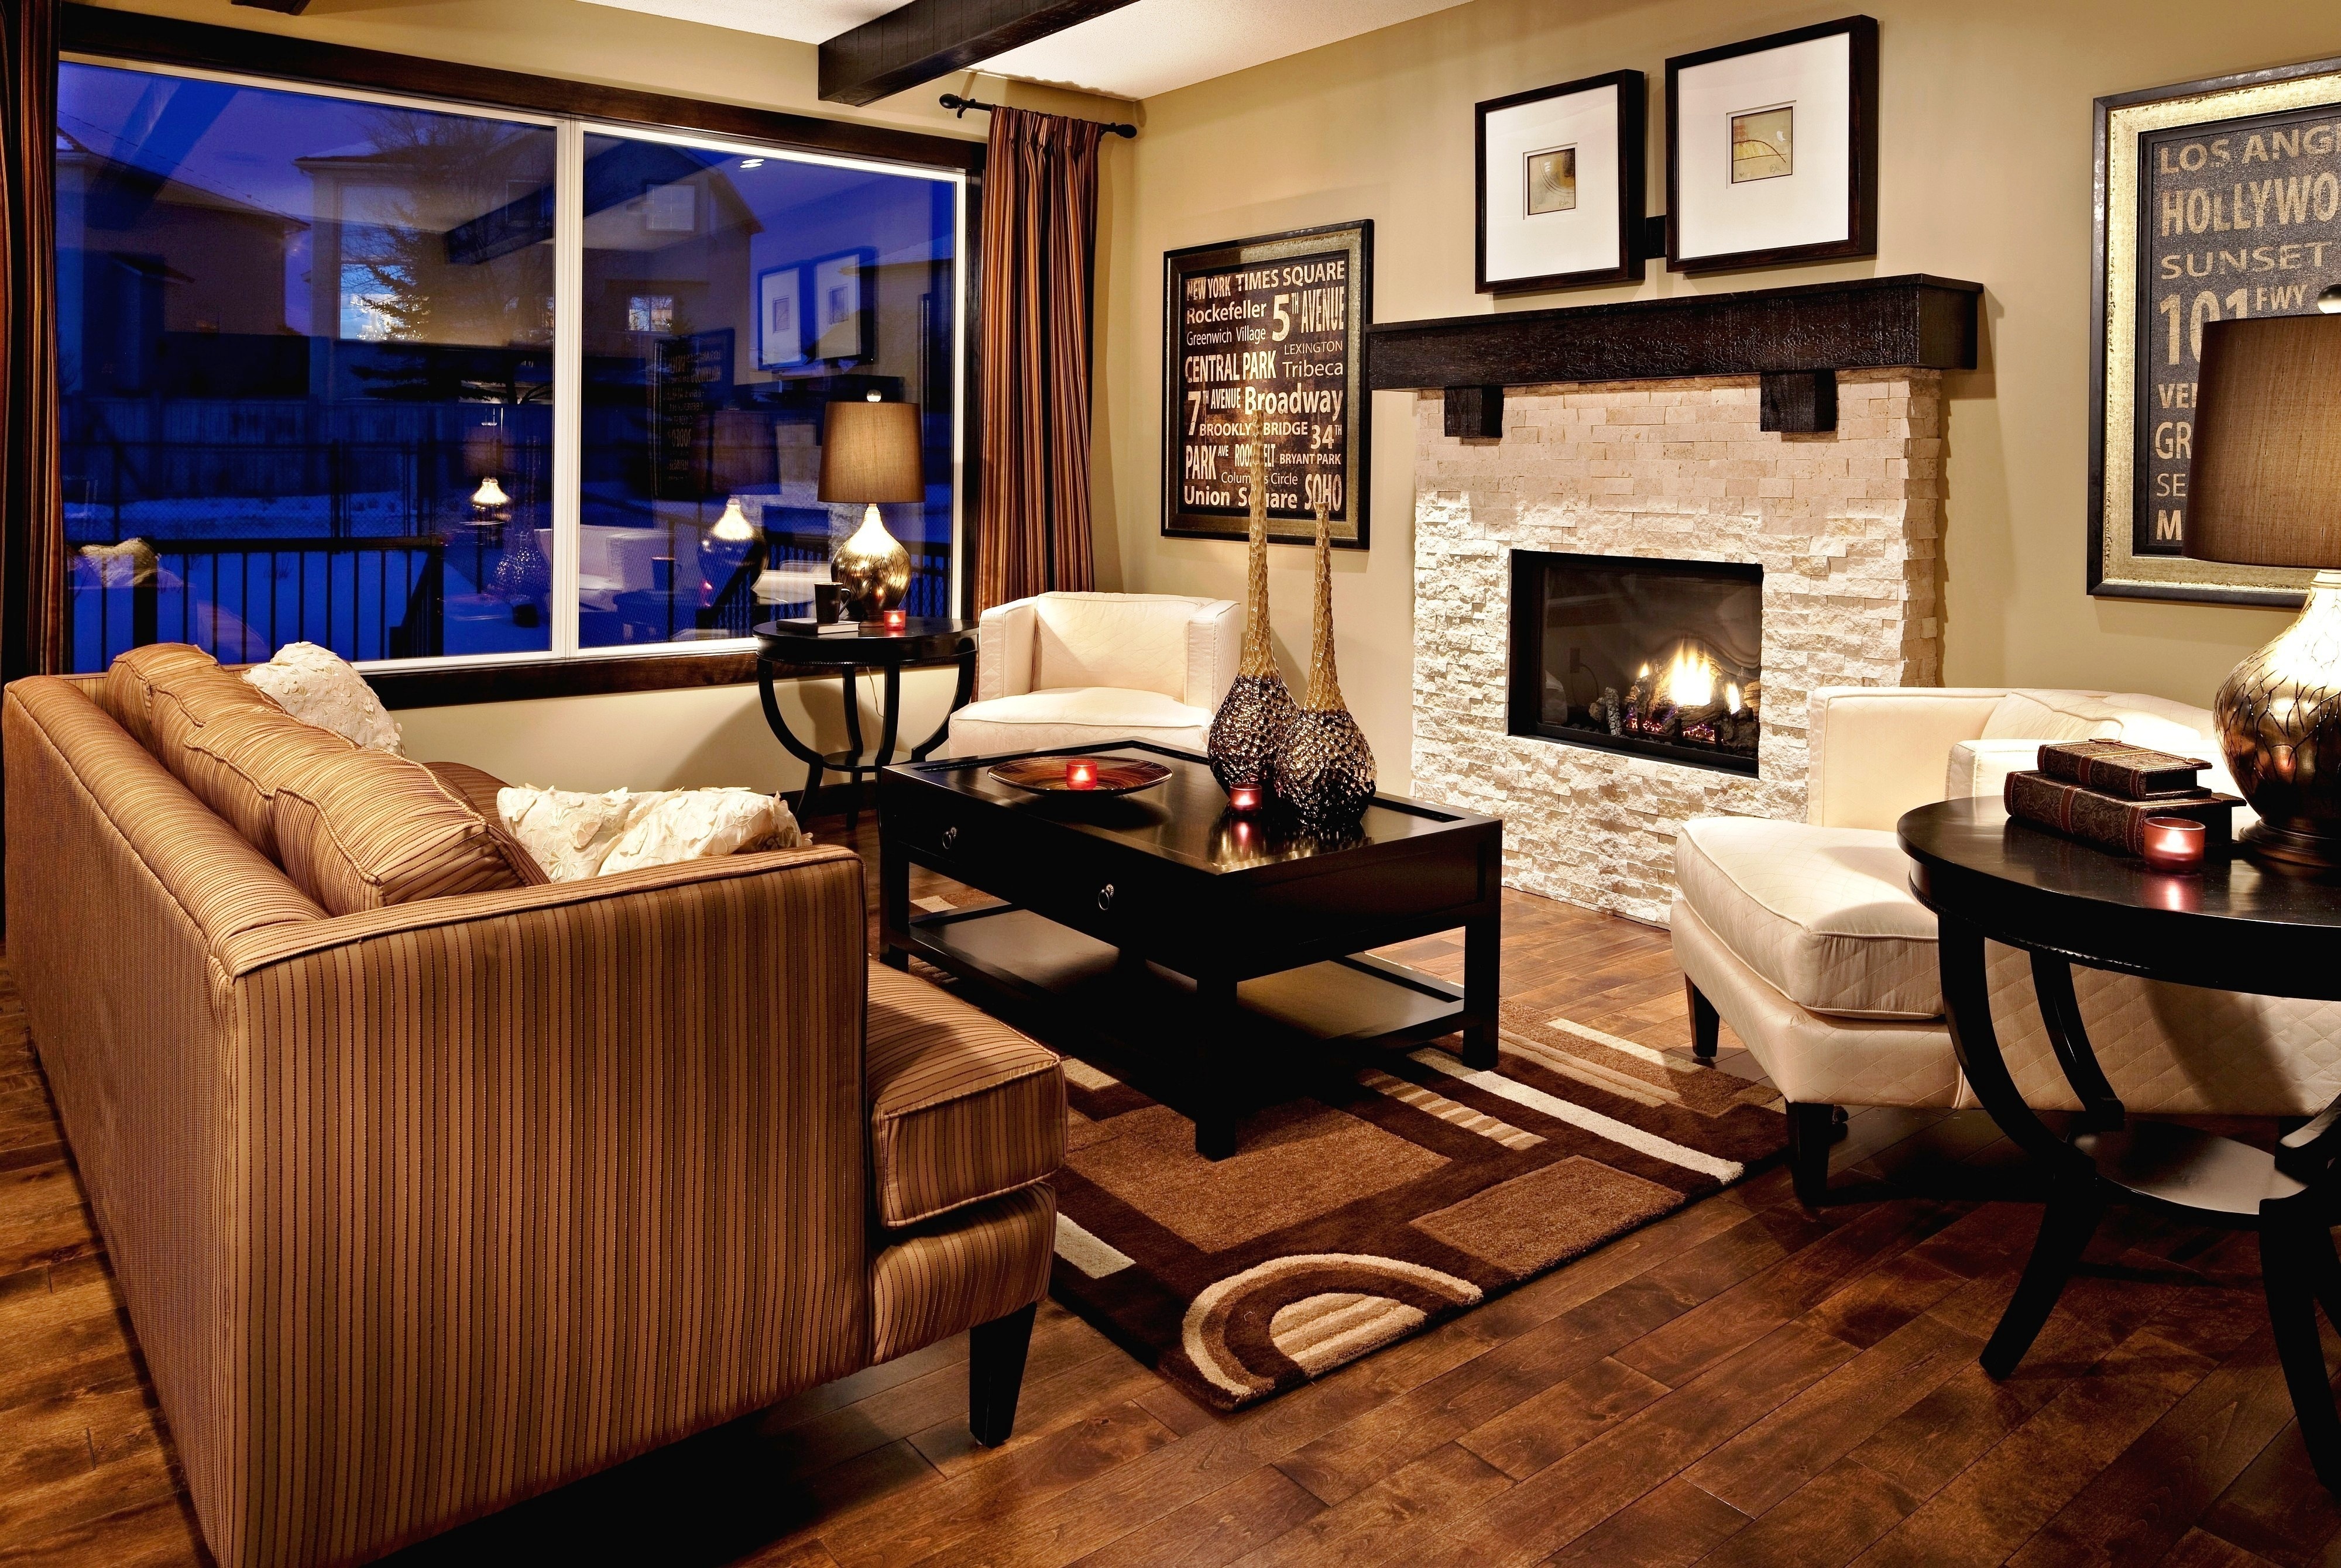 интерьер светлый камин диван ковер interior light fireplace sofa carpet скачать